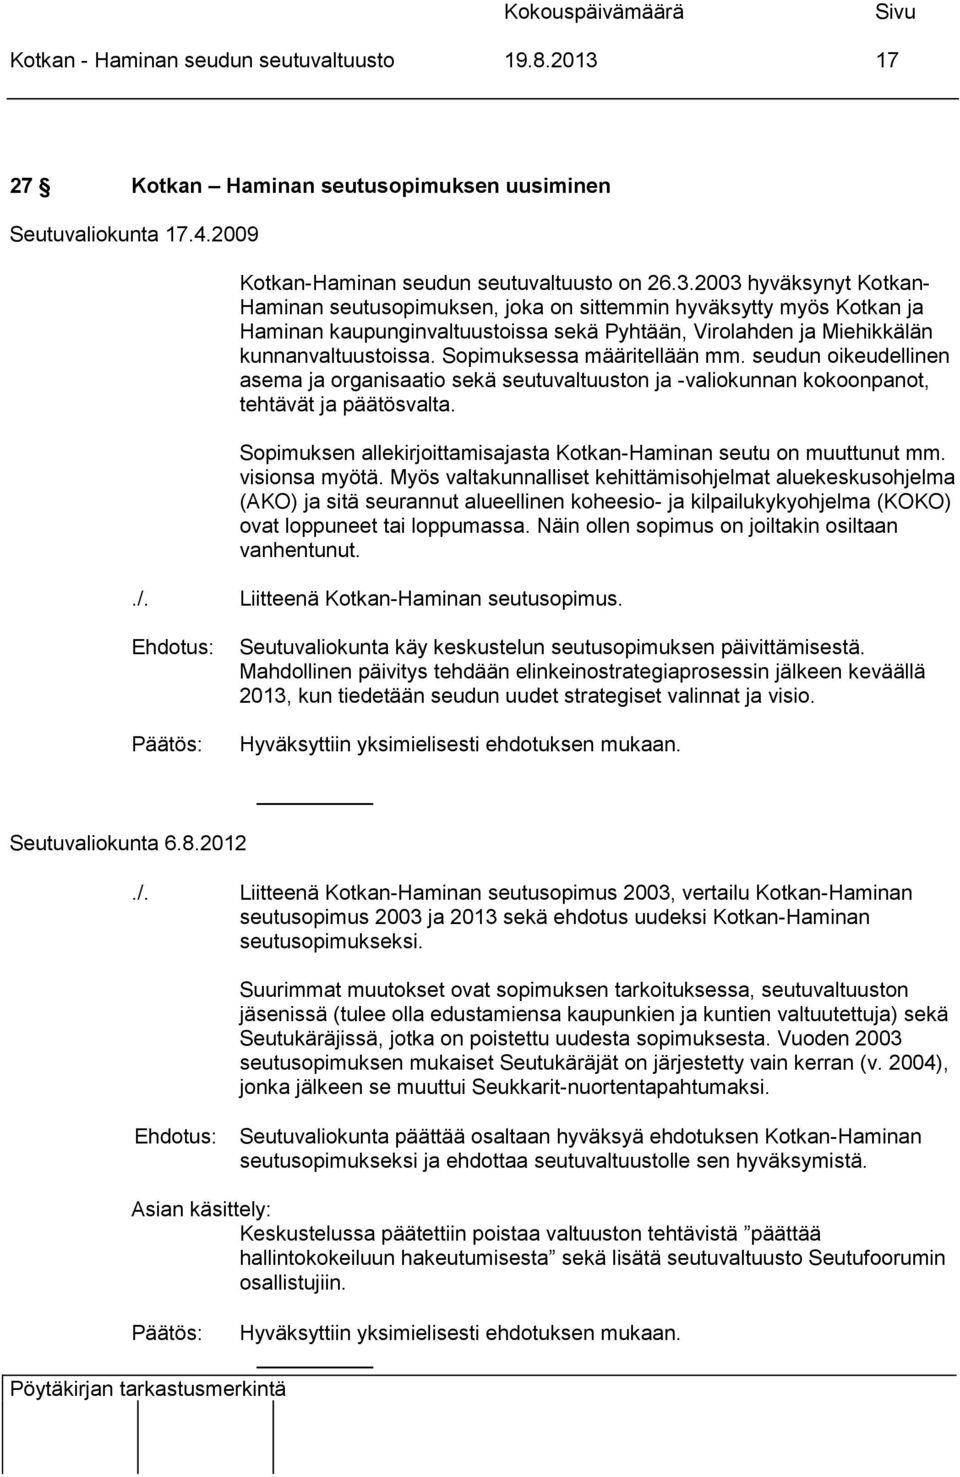 2003 hyväksynyt Kotkan- Haminan seutusopimuksen, joka on sittemmin hyväksytty myös Kotkan ja Haminan kaupunginvaltuustoissa sekä Pyhtään, Virolahden ja Miehikkälän kunnanvaltuustoissa.